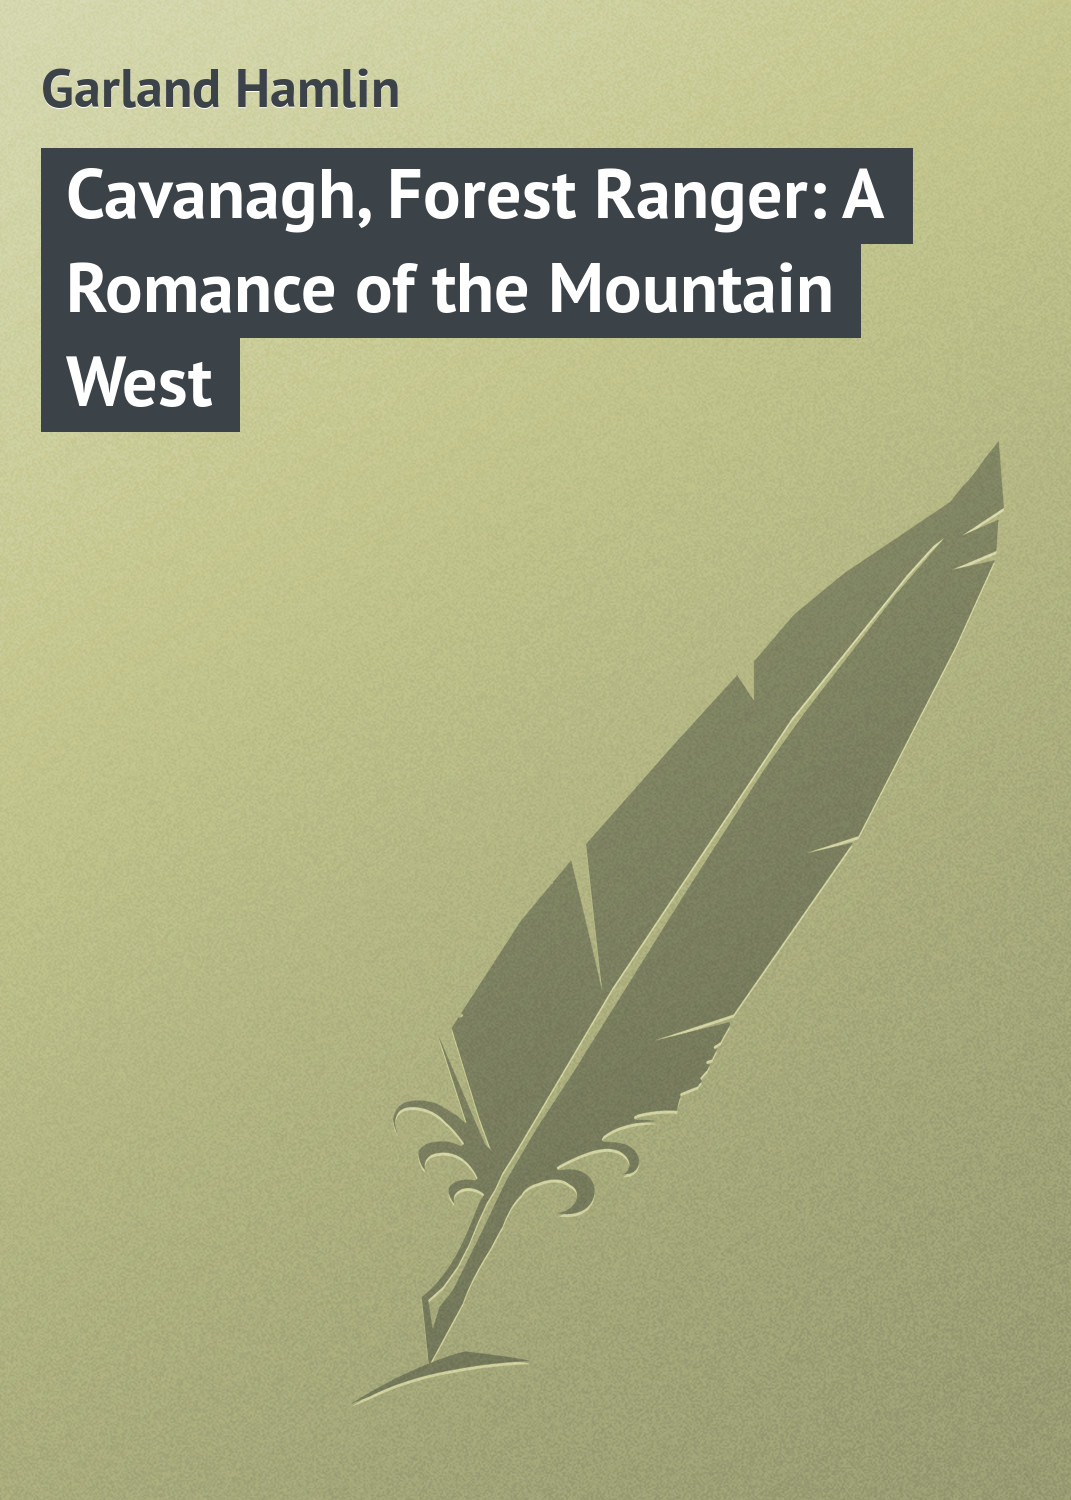 Книга Cavanagh, Forest Ranger: A Romance of the Mountain West из серии , созданная Hamlin Garland, может относится к жанру Зарубежная классика, Зарубежные приключения, Иностранные языки. Стоимость электронной книги Cavanagh, Forest Ranger: A Romance of the Mountain West с идентификатором 23148243 составляет 5.99 руб.